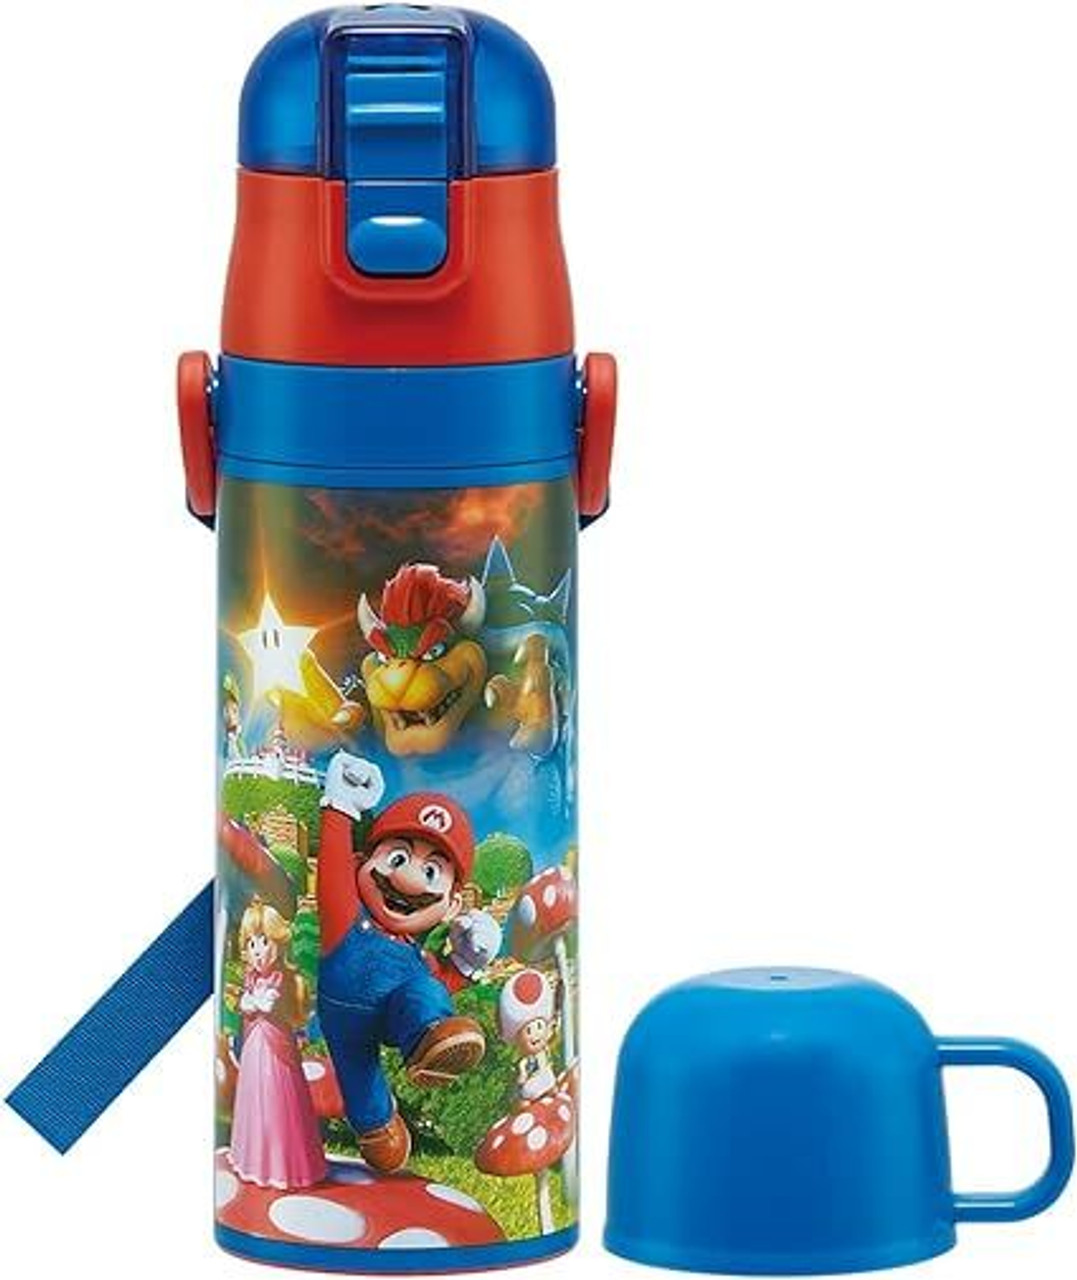 Super Mario Metal Water Bottle with Straw | GameStop